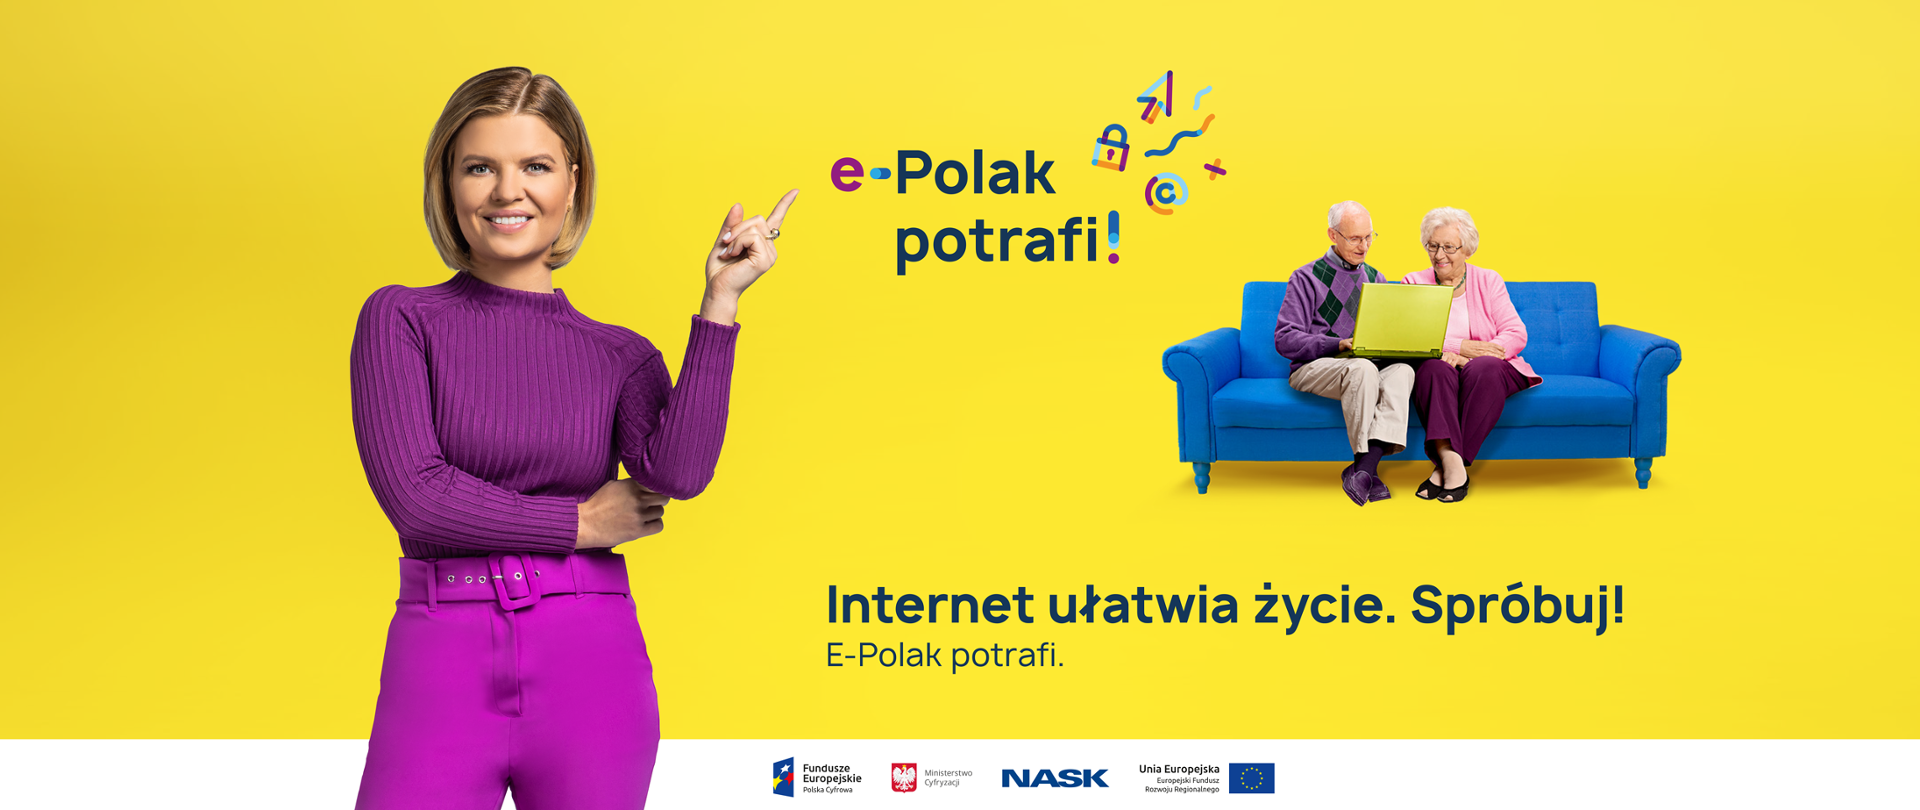 Marta Manowska stoi wskazując palcem na napis "e-Polak potrafi", w głębi ilustracji para starszych osób siedzi na kanapie z laptopem.